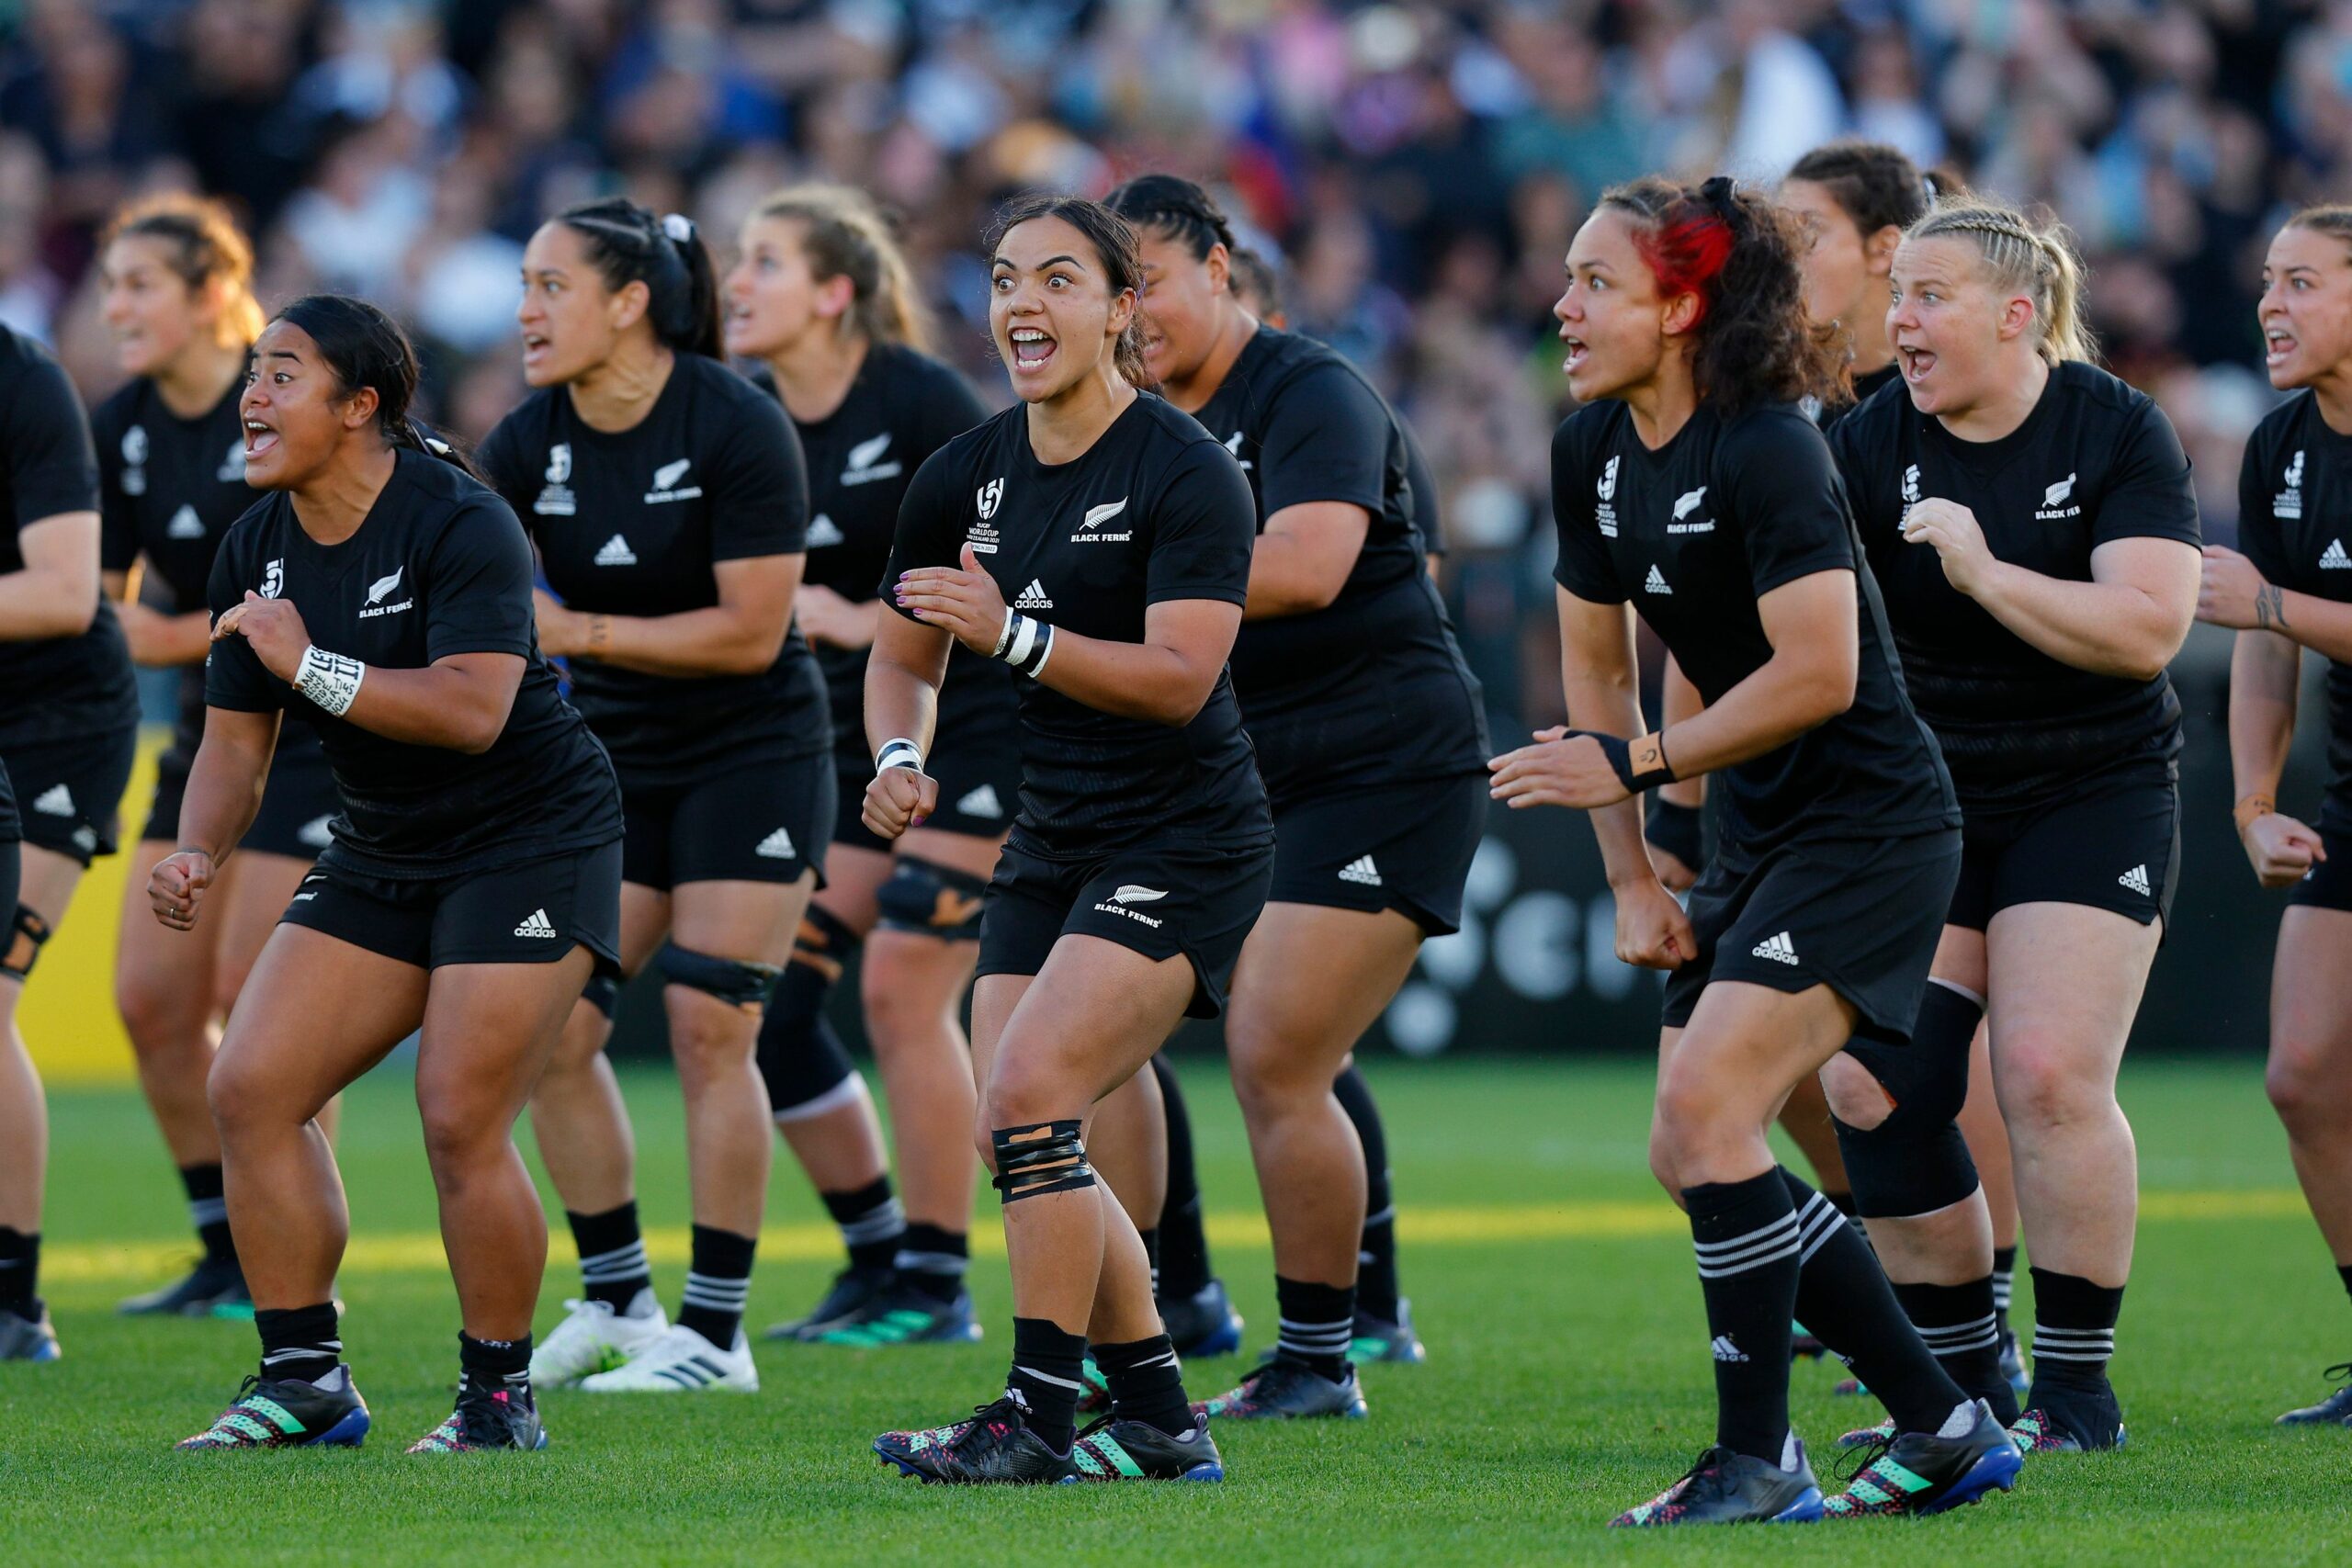 Mondiale femminile - La Nuova Zelanda è campione del Mondo! Inghilterra battuta 34-31